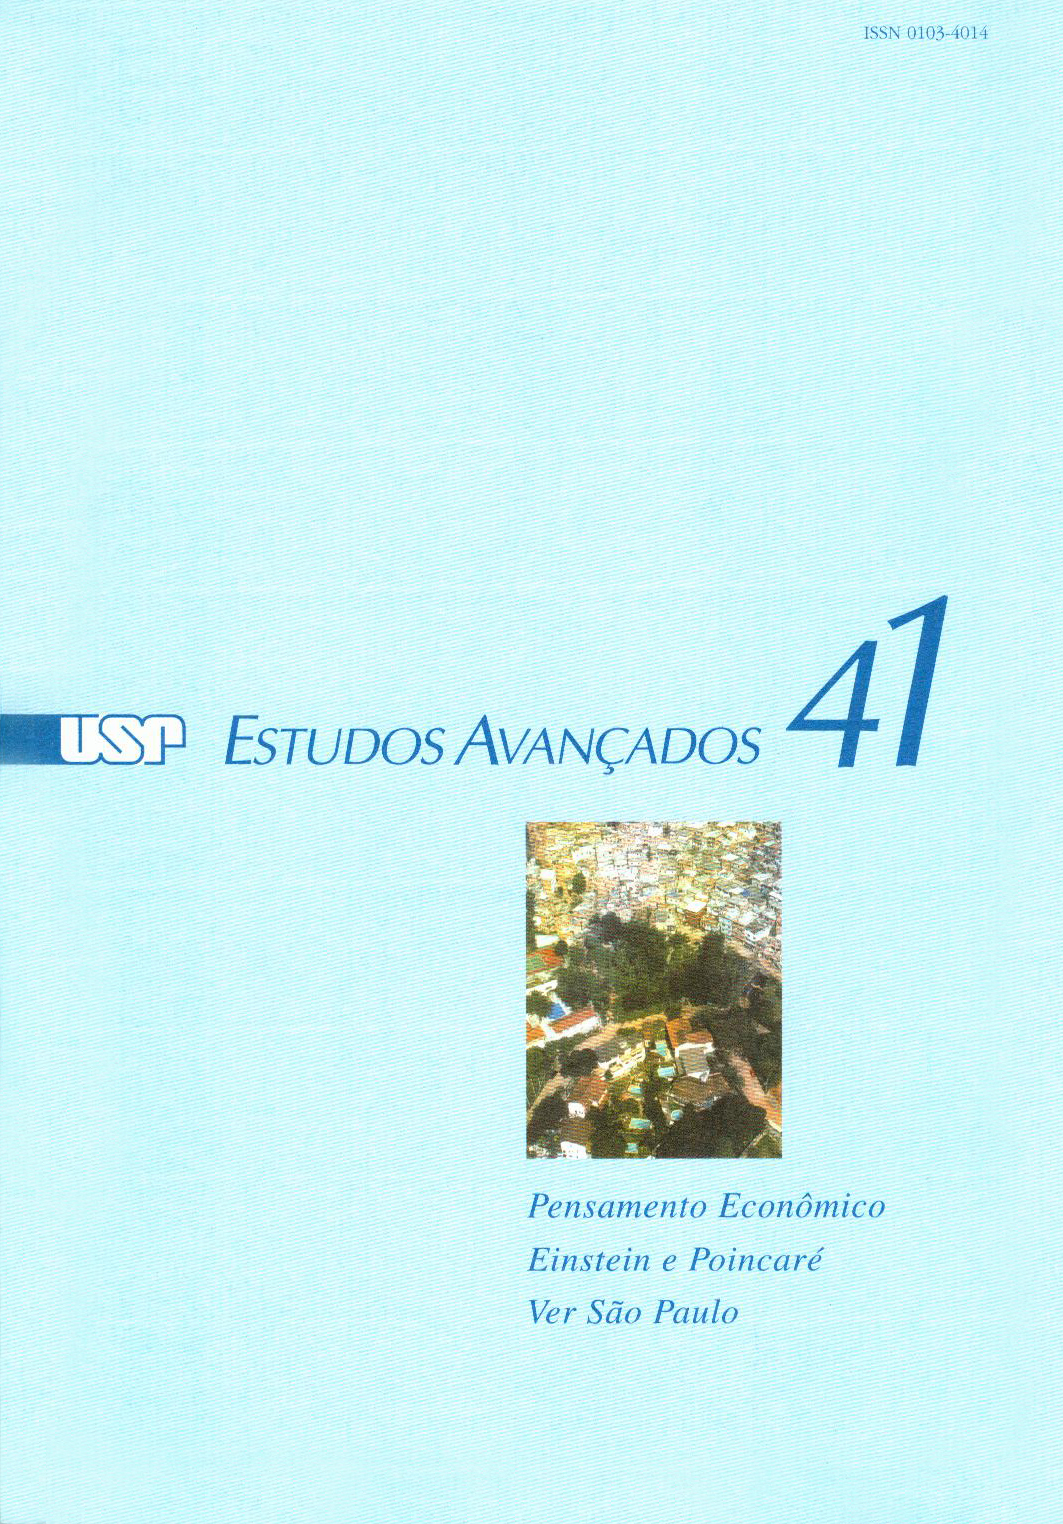 Capa Revista Estudos Avançados v15 n41